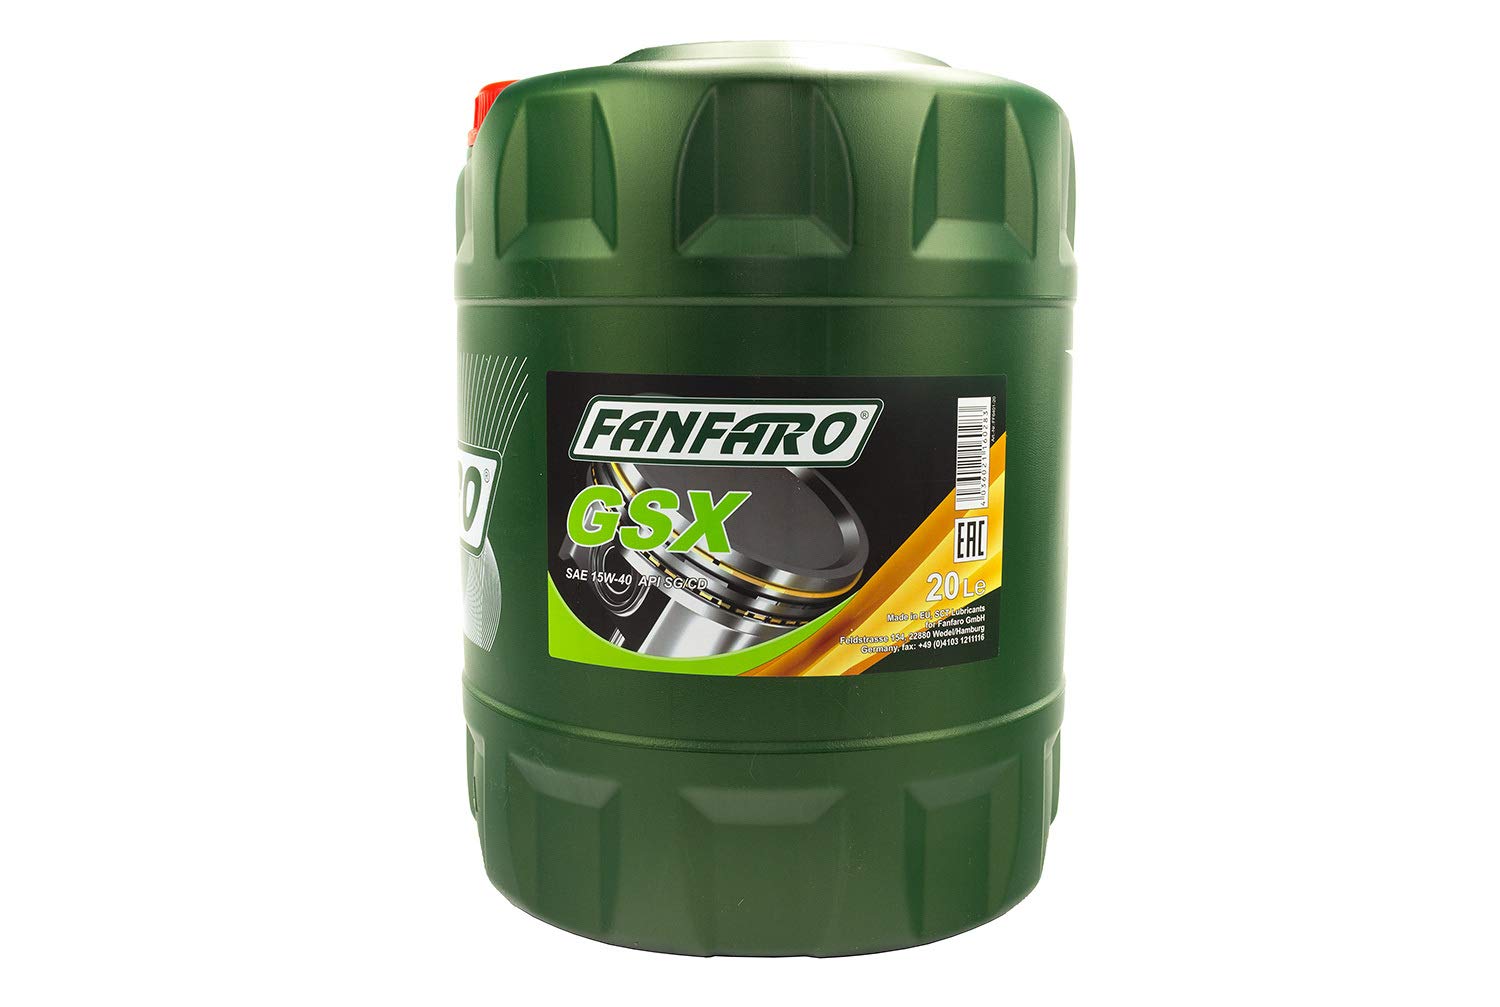 Sct - Mannol FF6401-20 - Motoröl von FANFARO